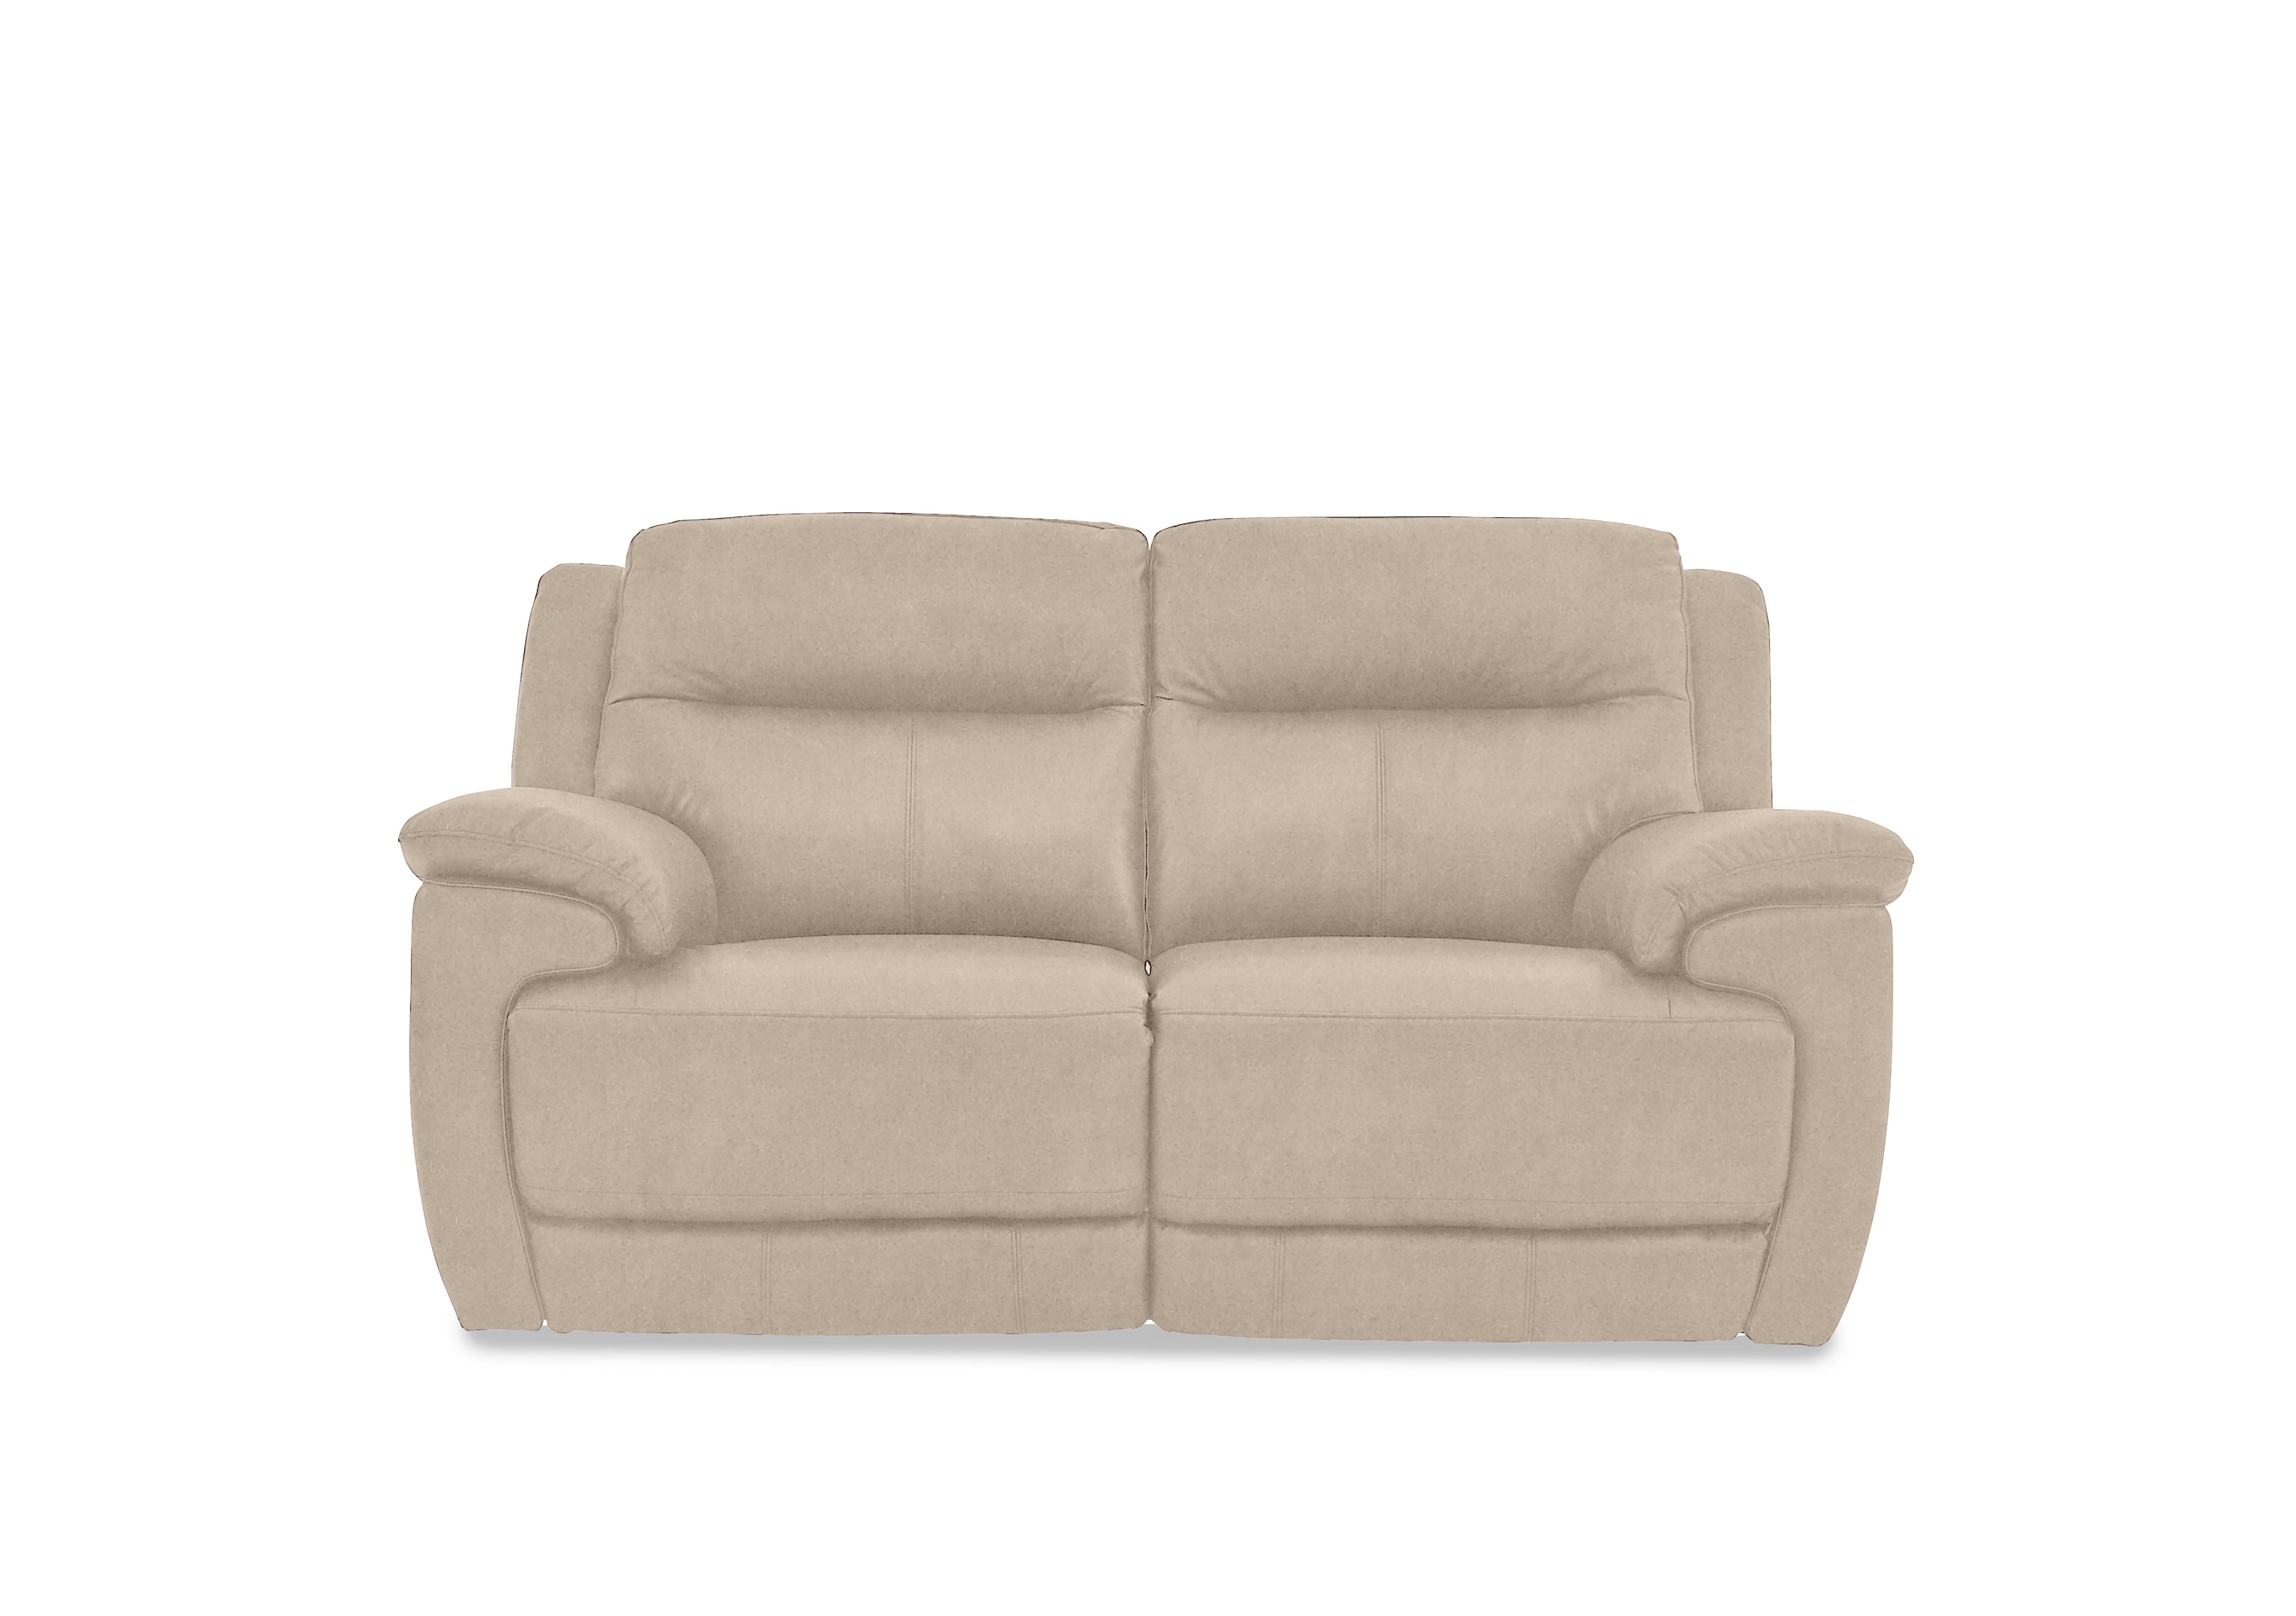 Touch 2 Seater Heavy Duty Fabric Sofa in Bfa-Bnn-R26 Fv2 Cream on Furniture Village